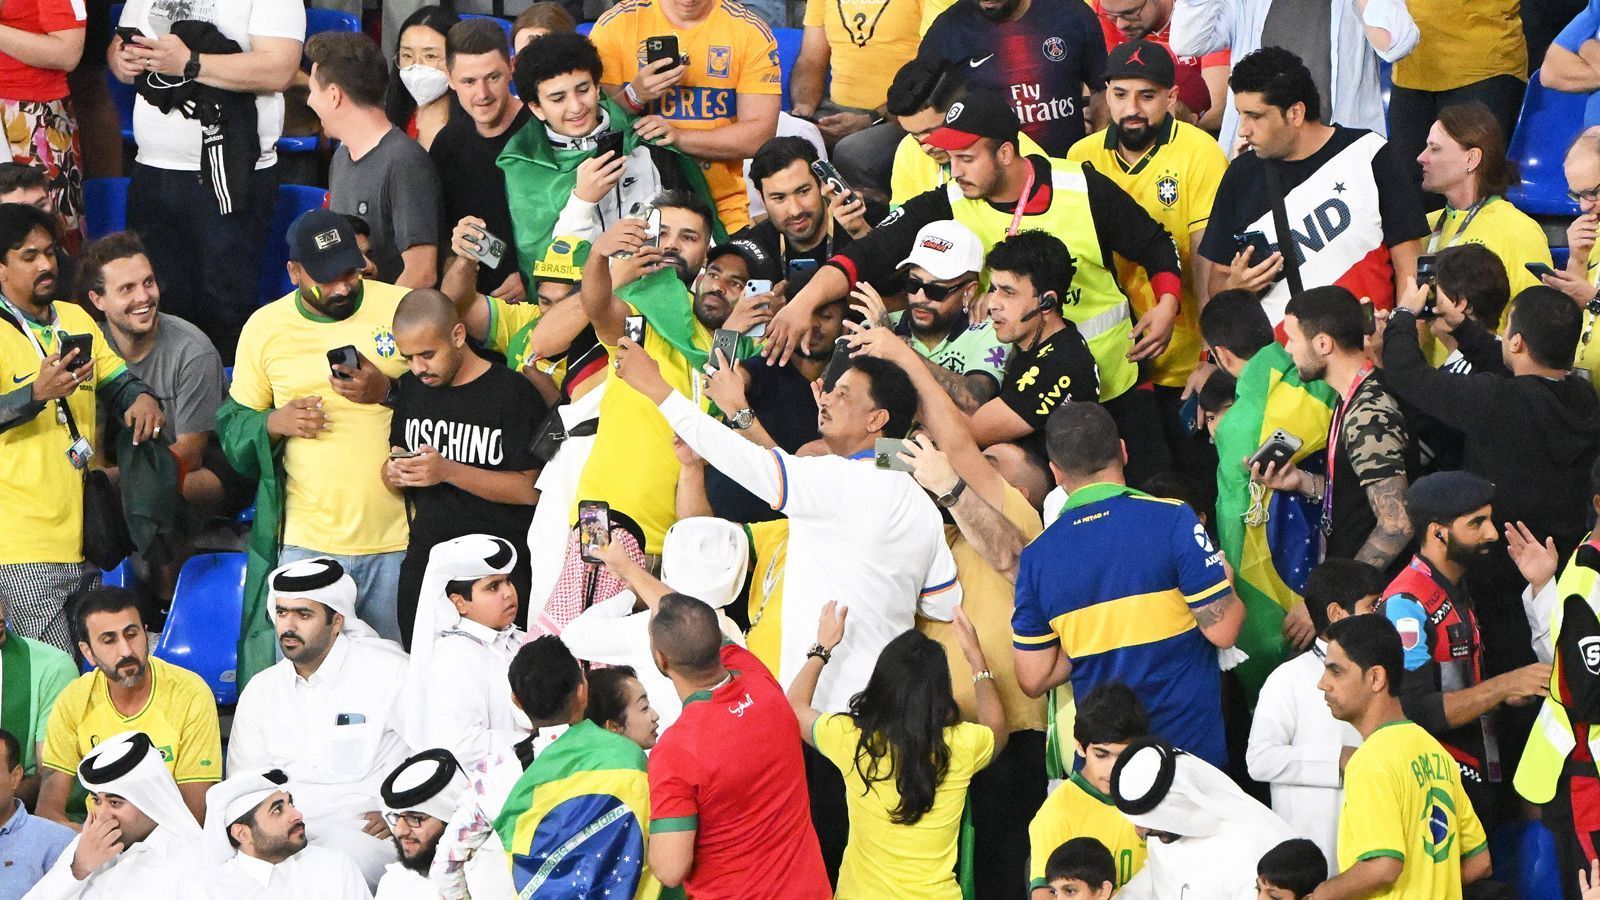 
                <strong>Neymar: Double des Superstars macht Brasiliens Fans verrückt</strong><br>
                Wie viele der Anhänger tatsächlich dachten, der echte Neymar stünden neben ihnen, ist nicht bekannt.
              